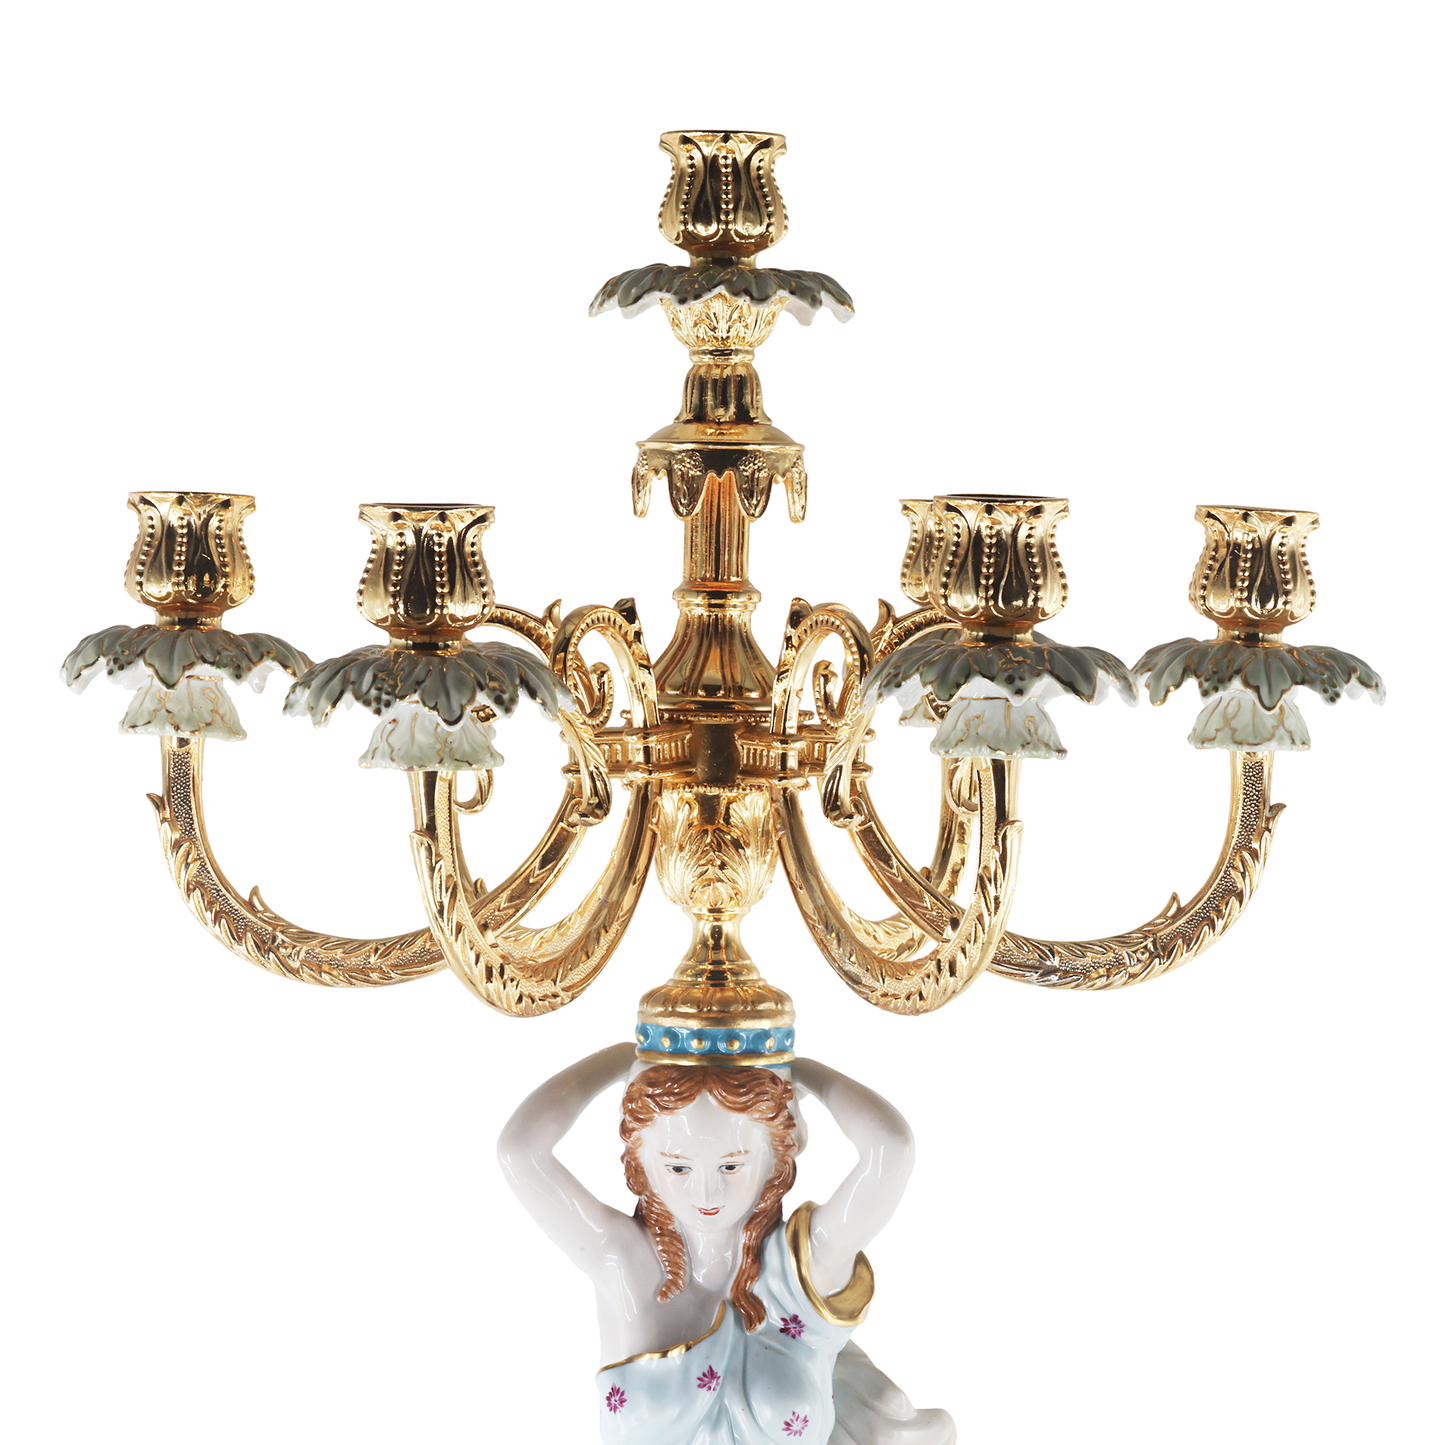 Portavelas de bronce con siete tazas y dama de porcelana